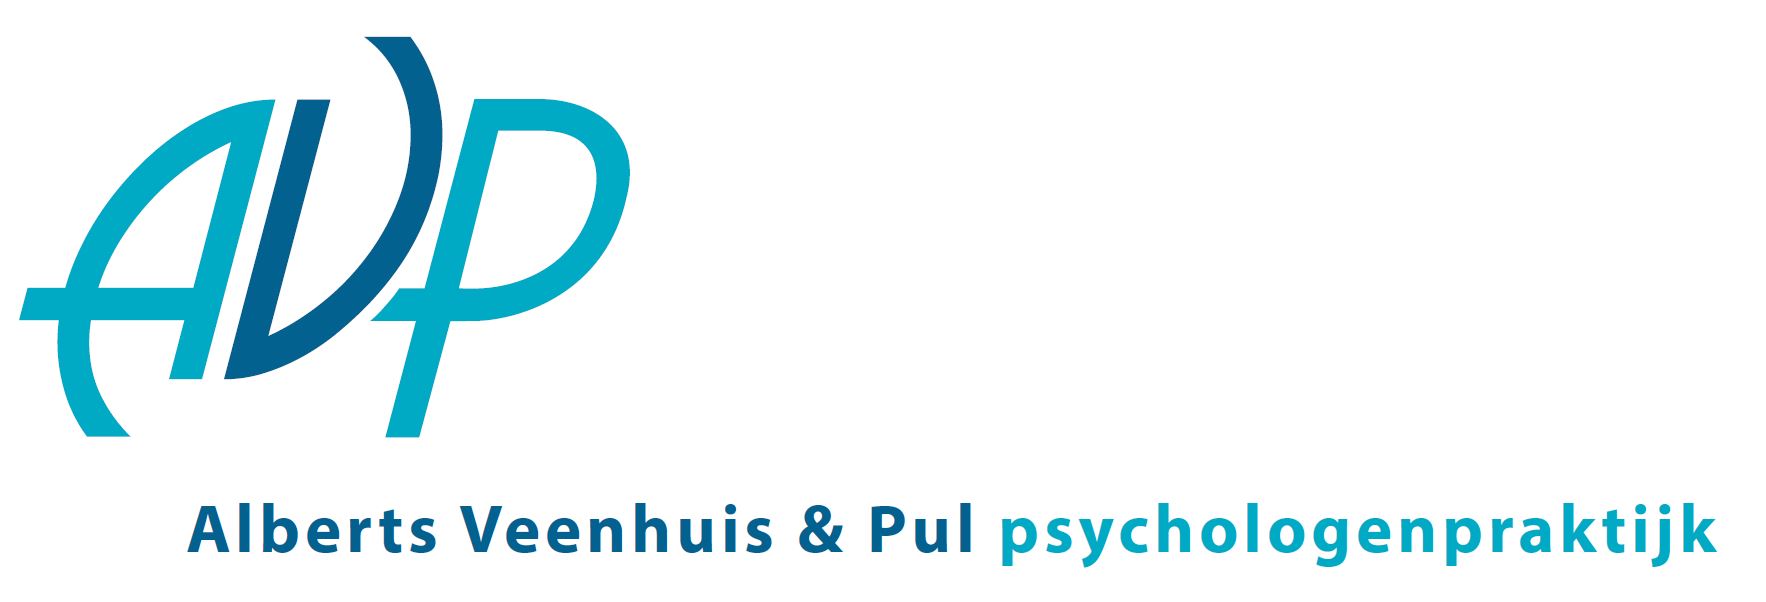 Alberts Veenhuis & Pul psychologenpraktijk